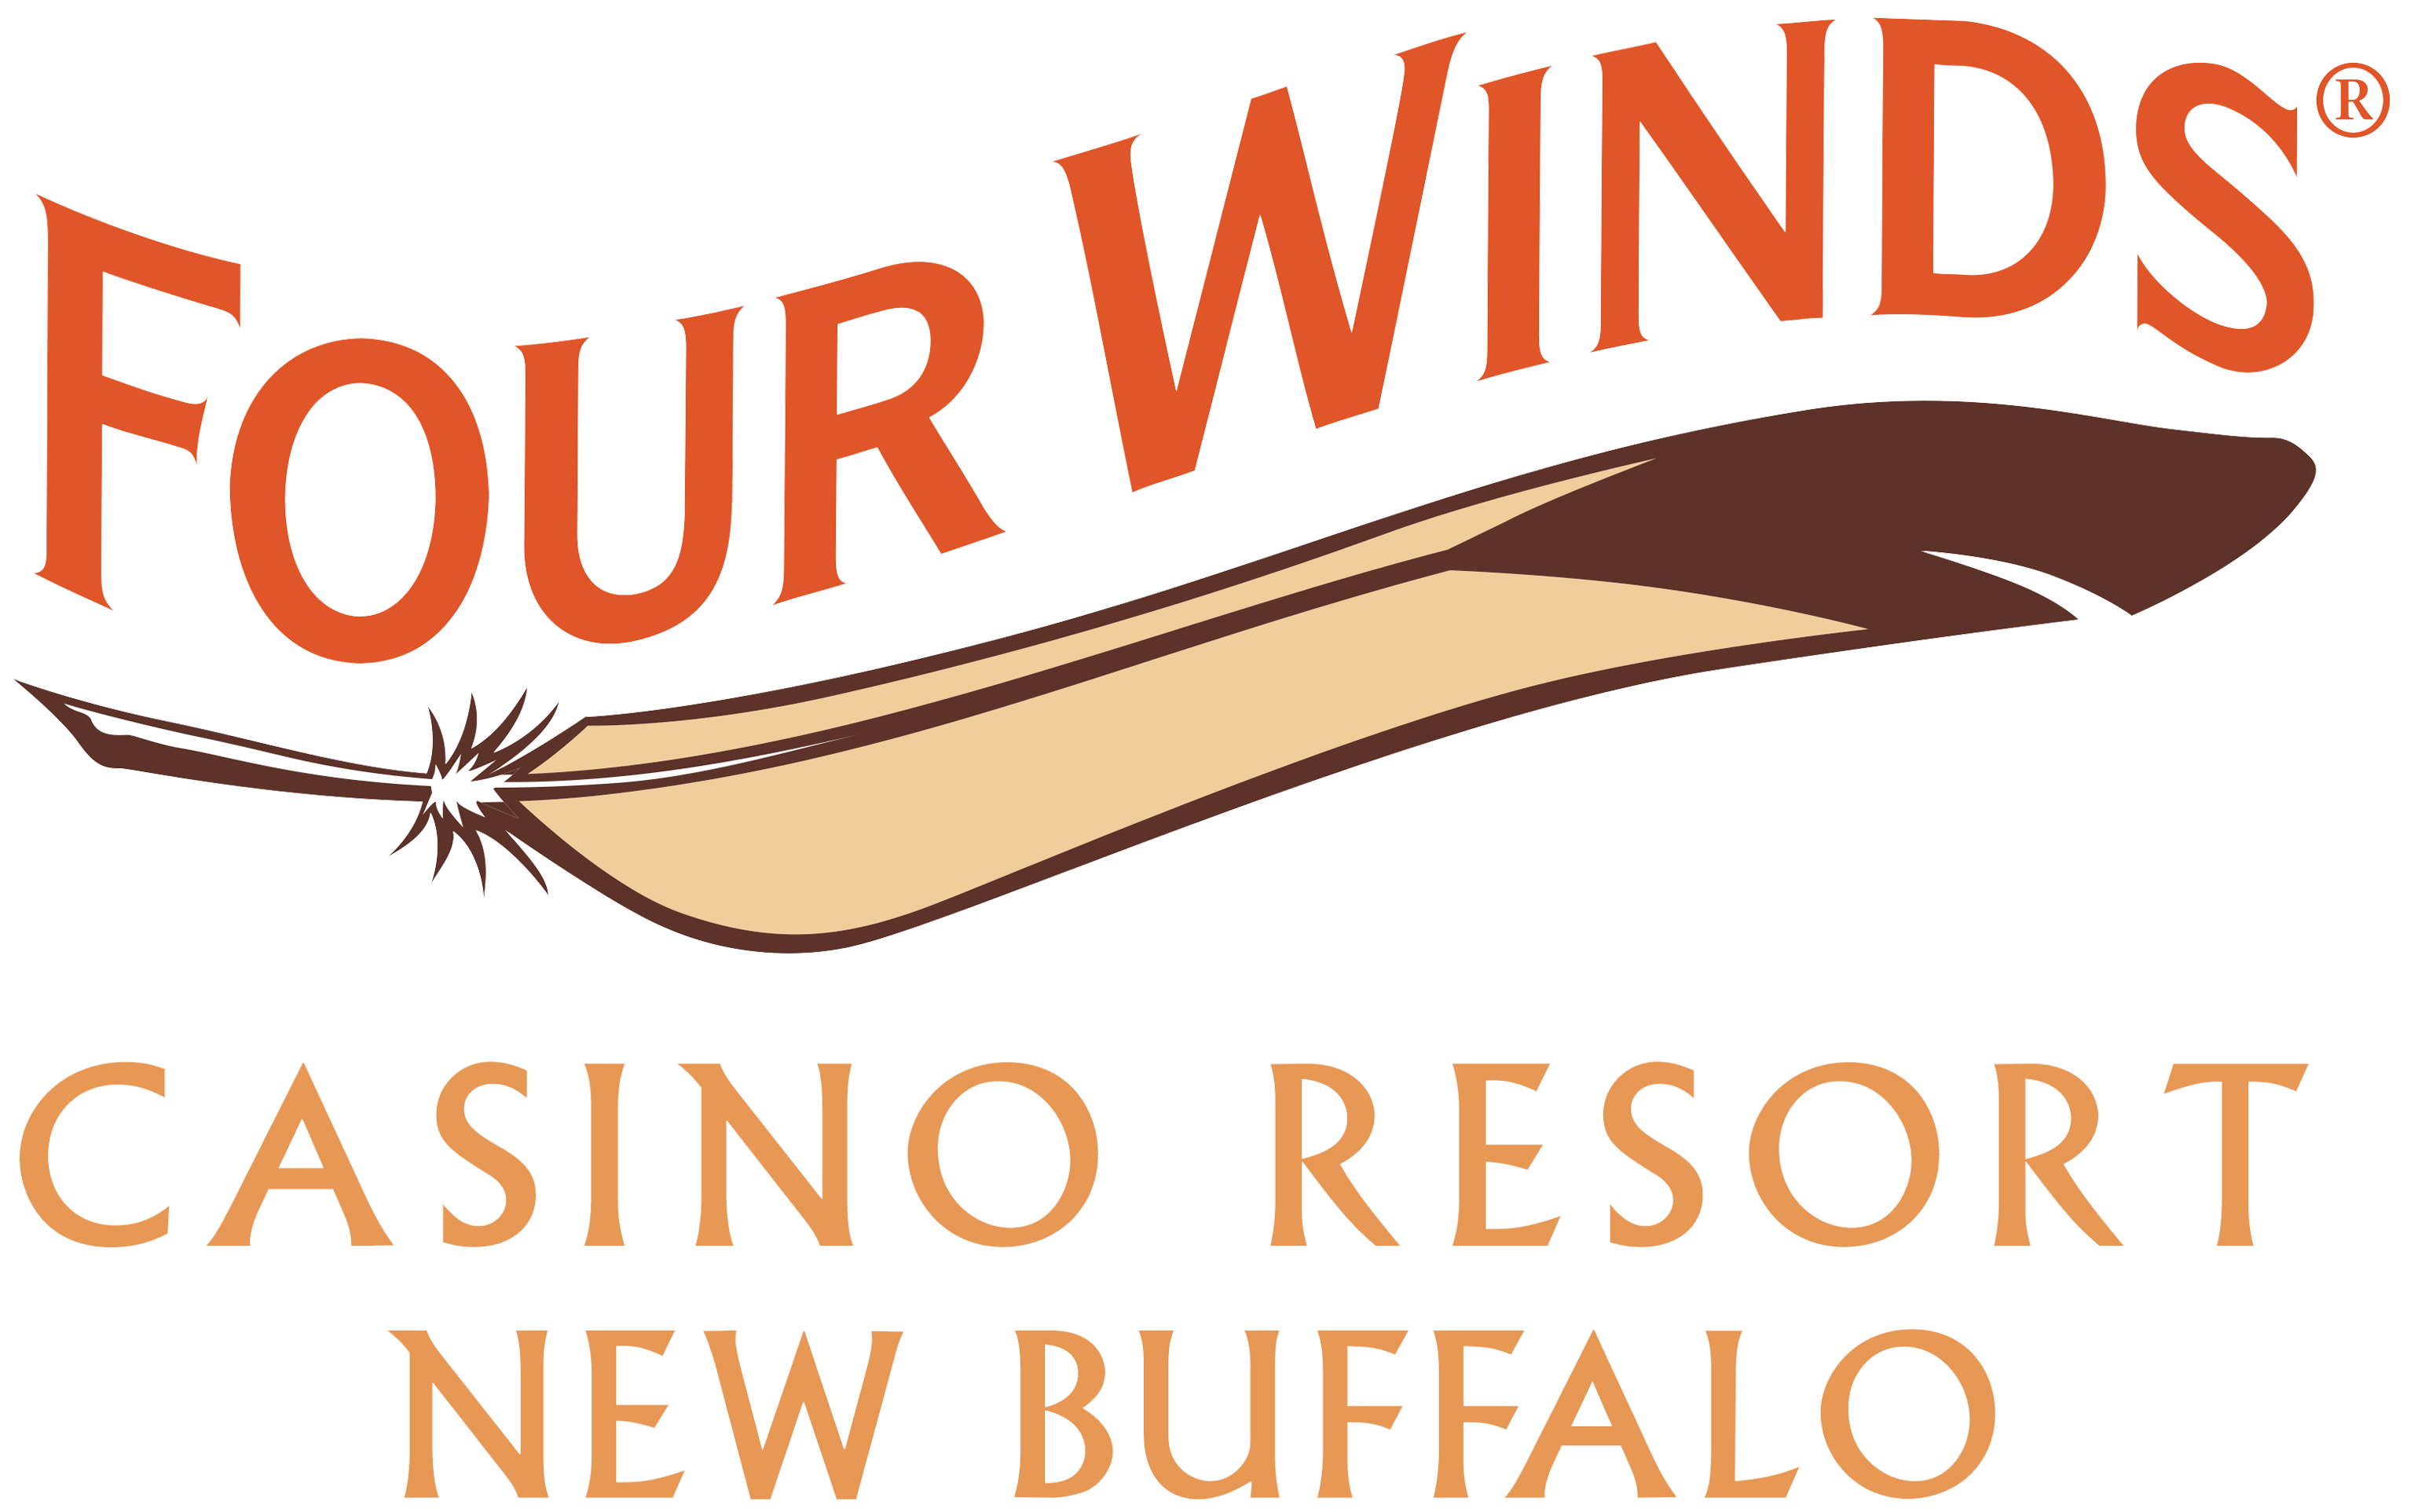 new buffalo four winds casino event center